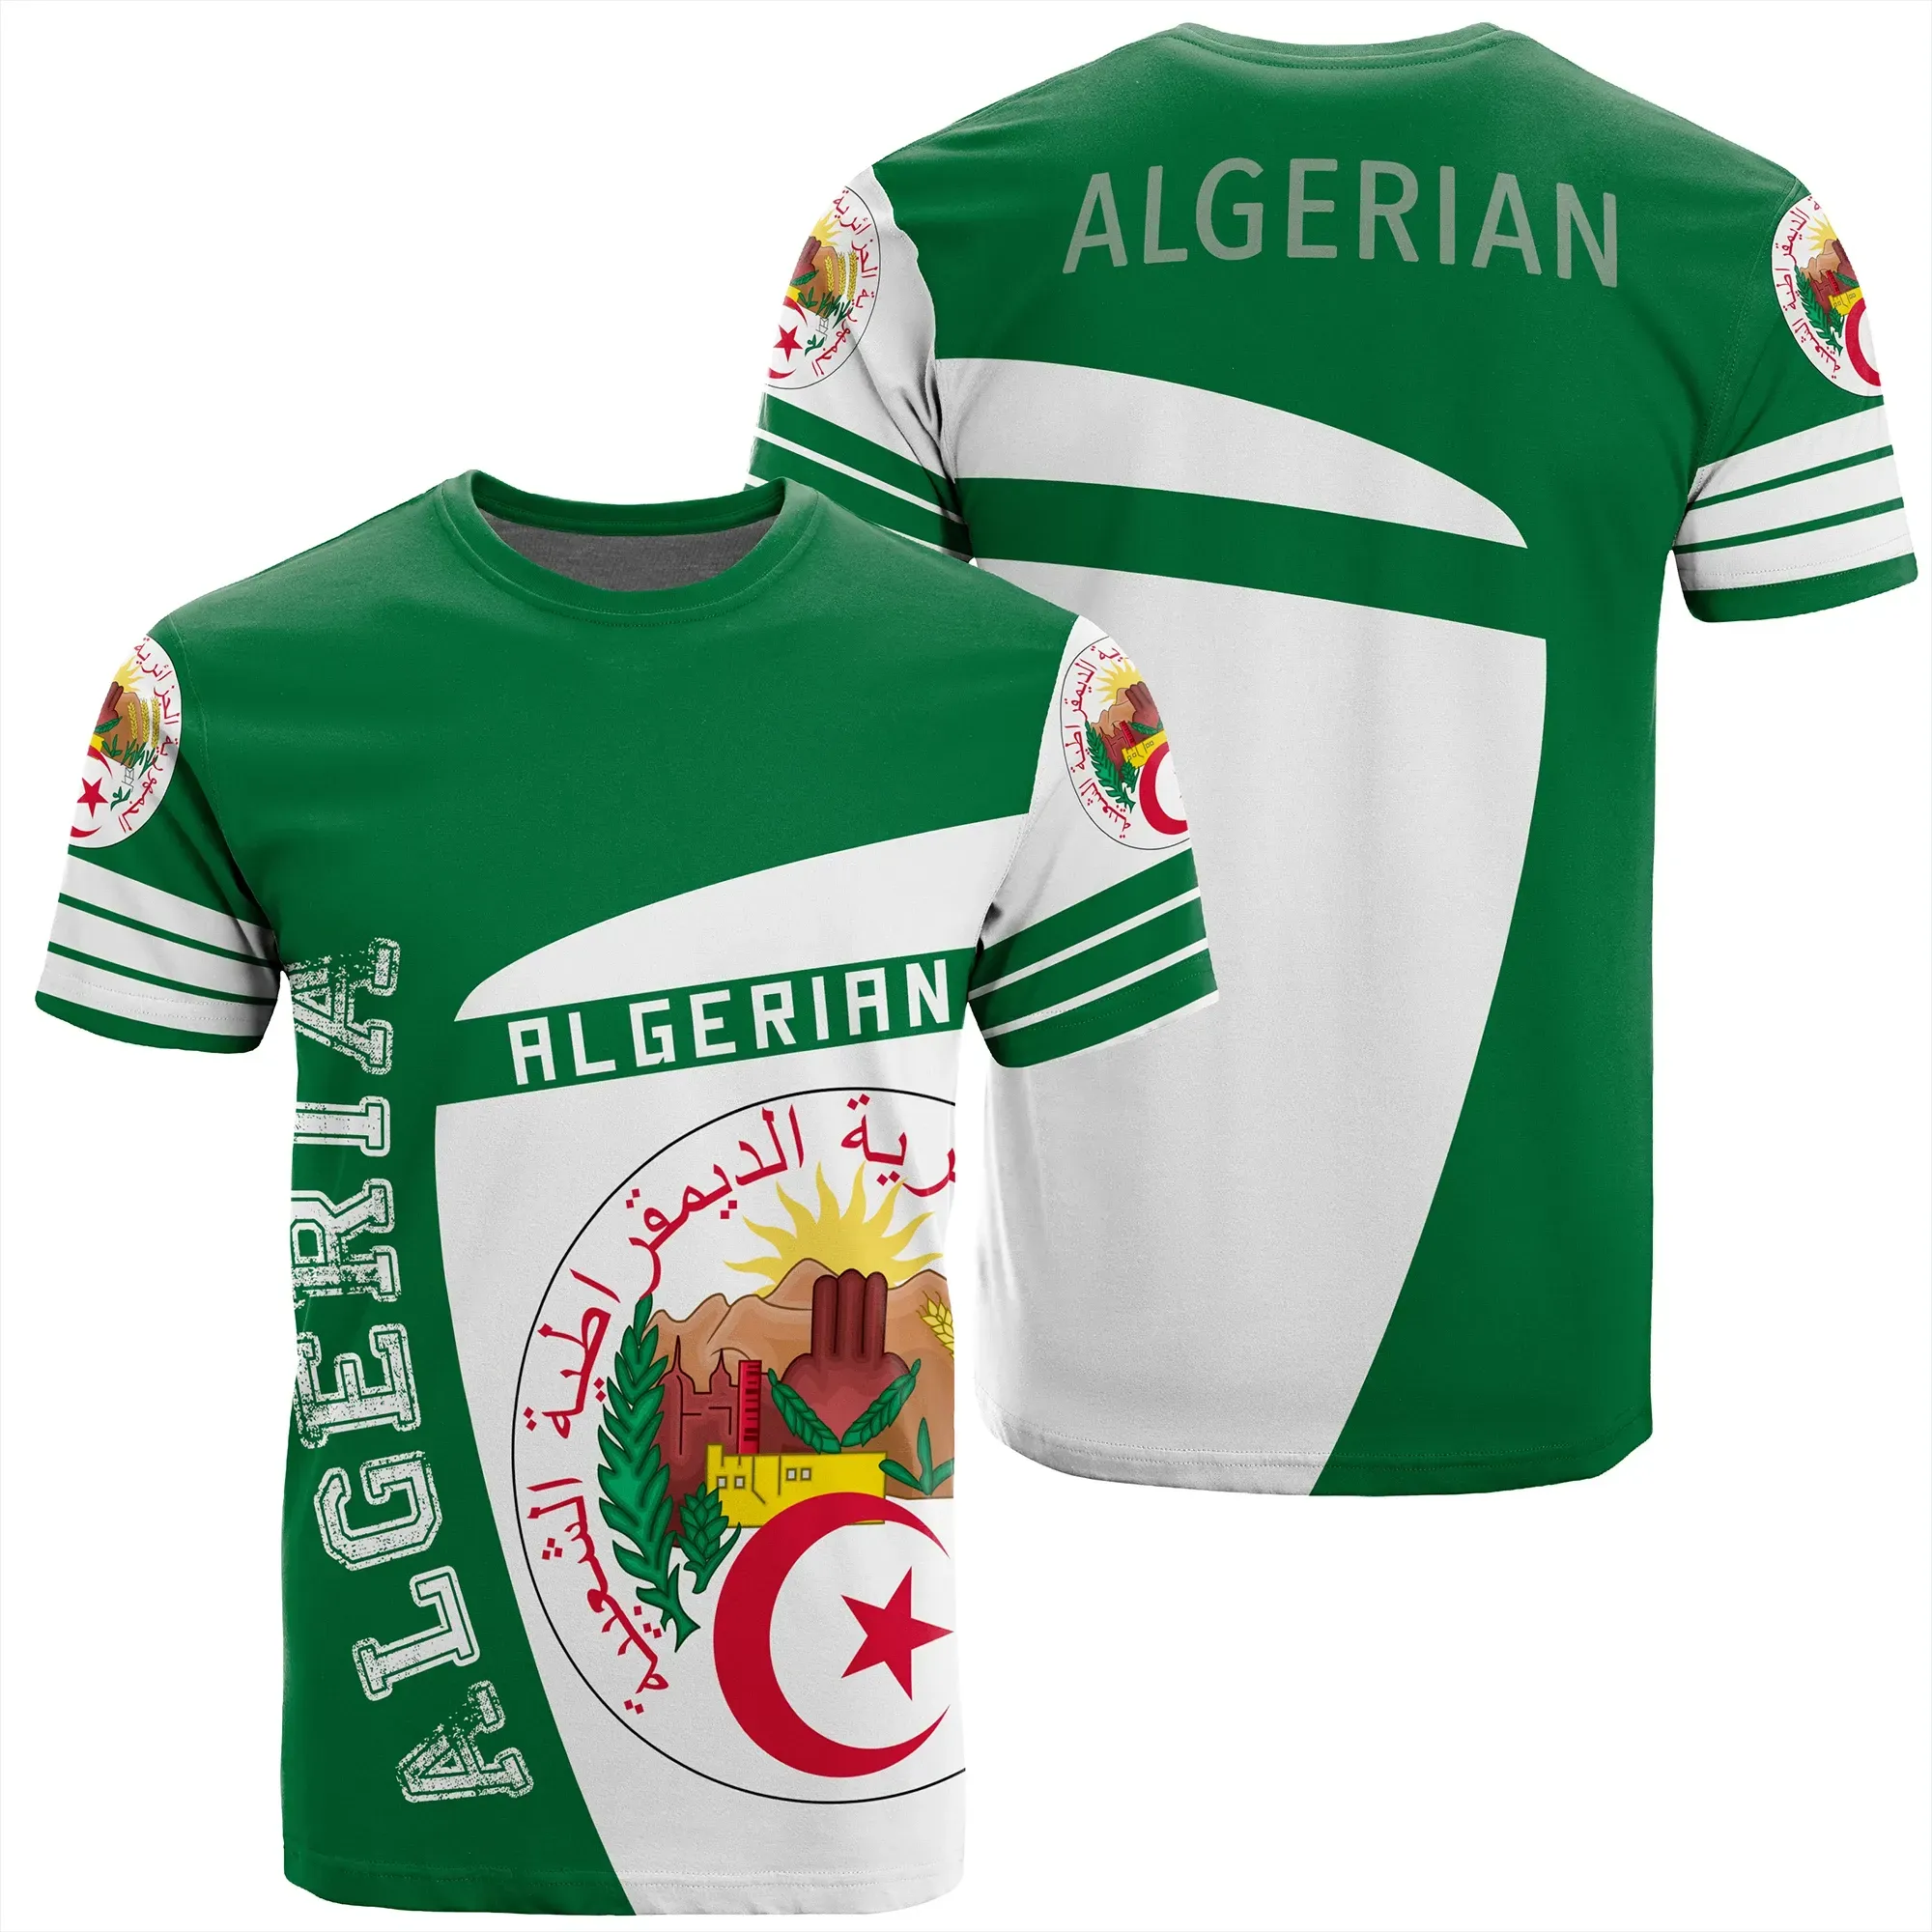 African T-shirt – Algeria Sport Premium Tee